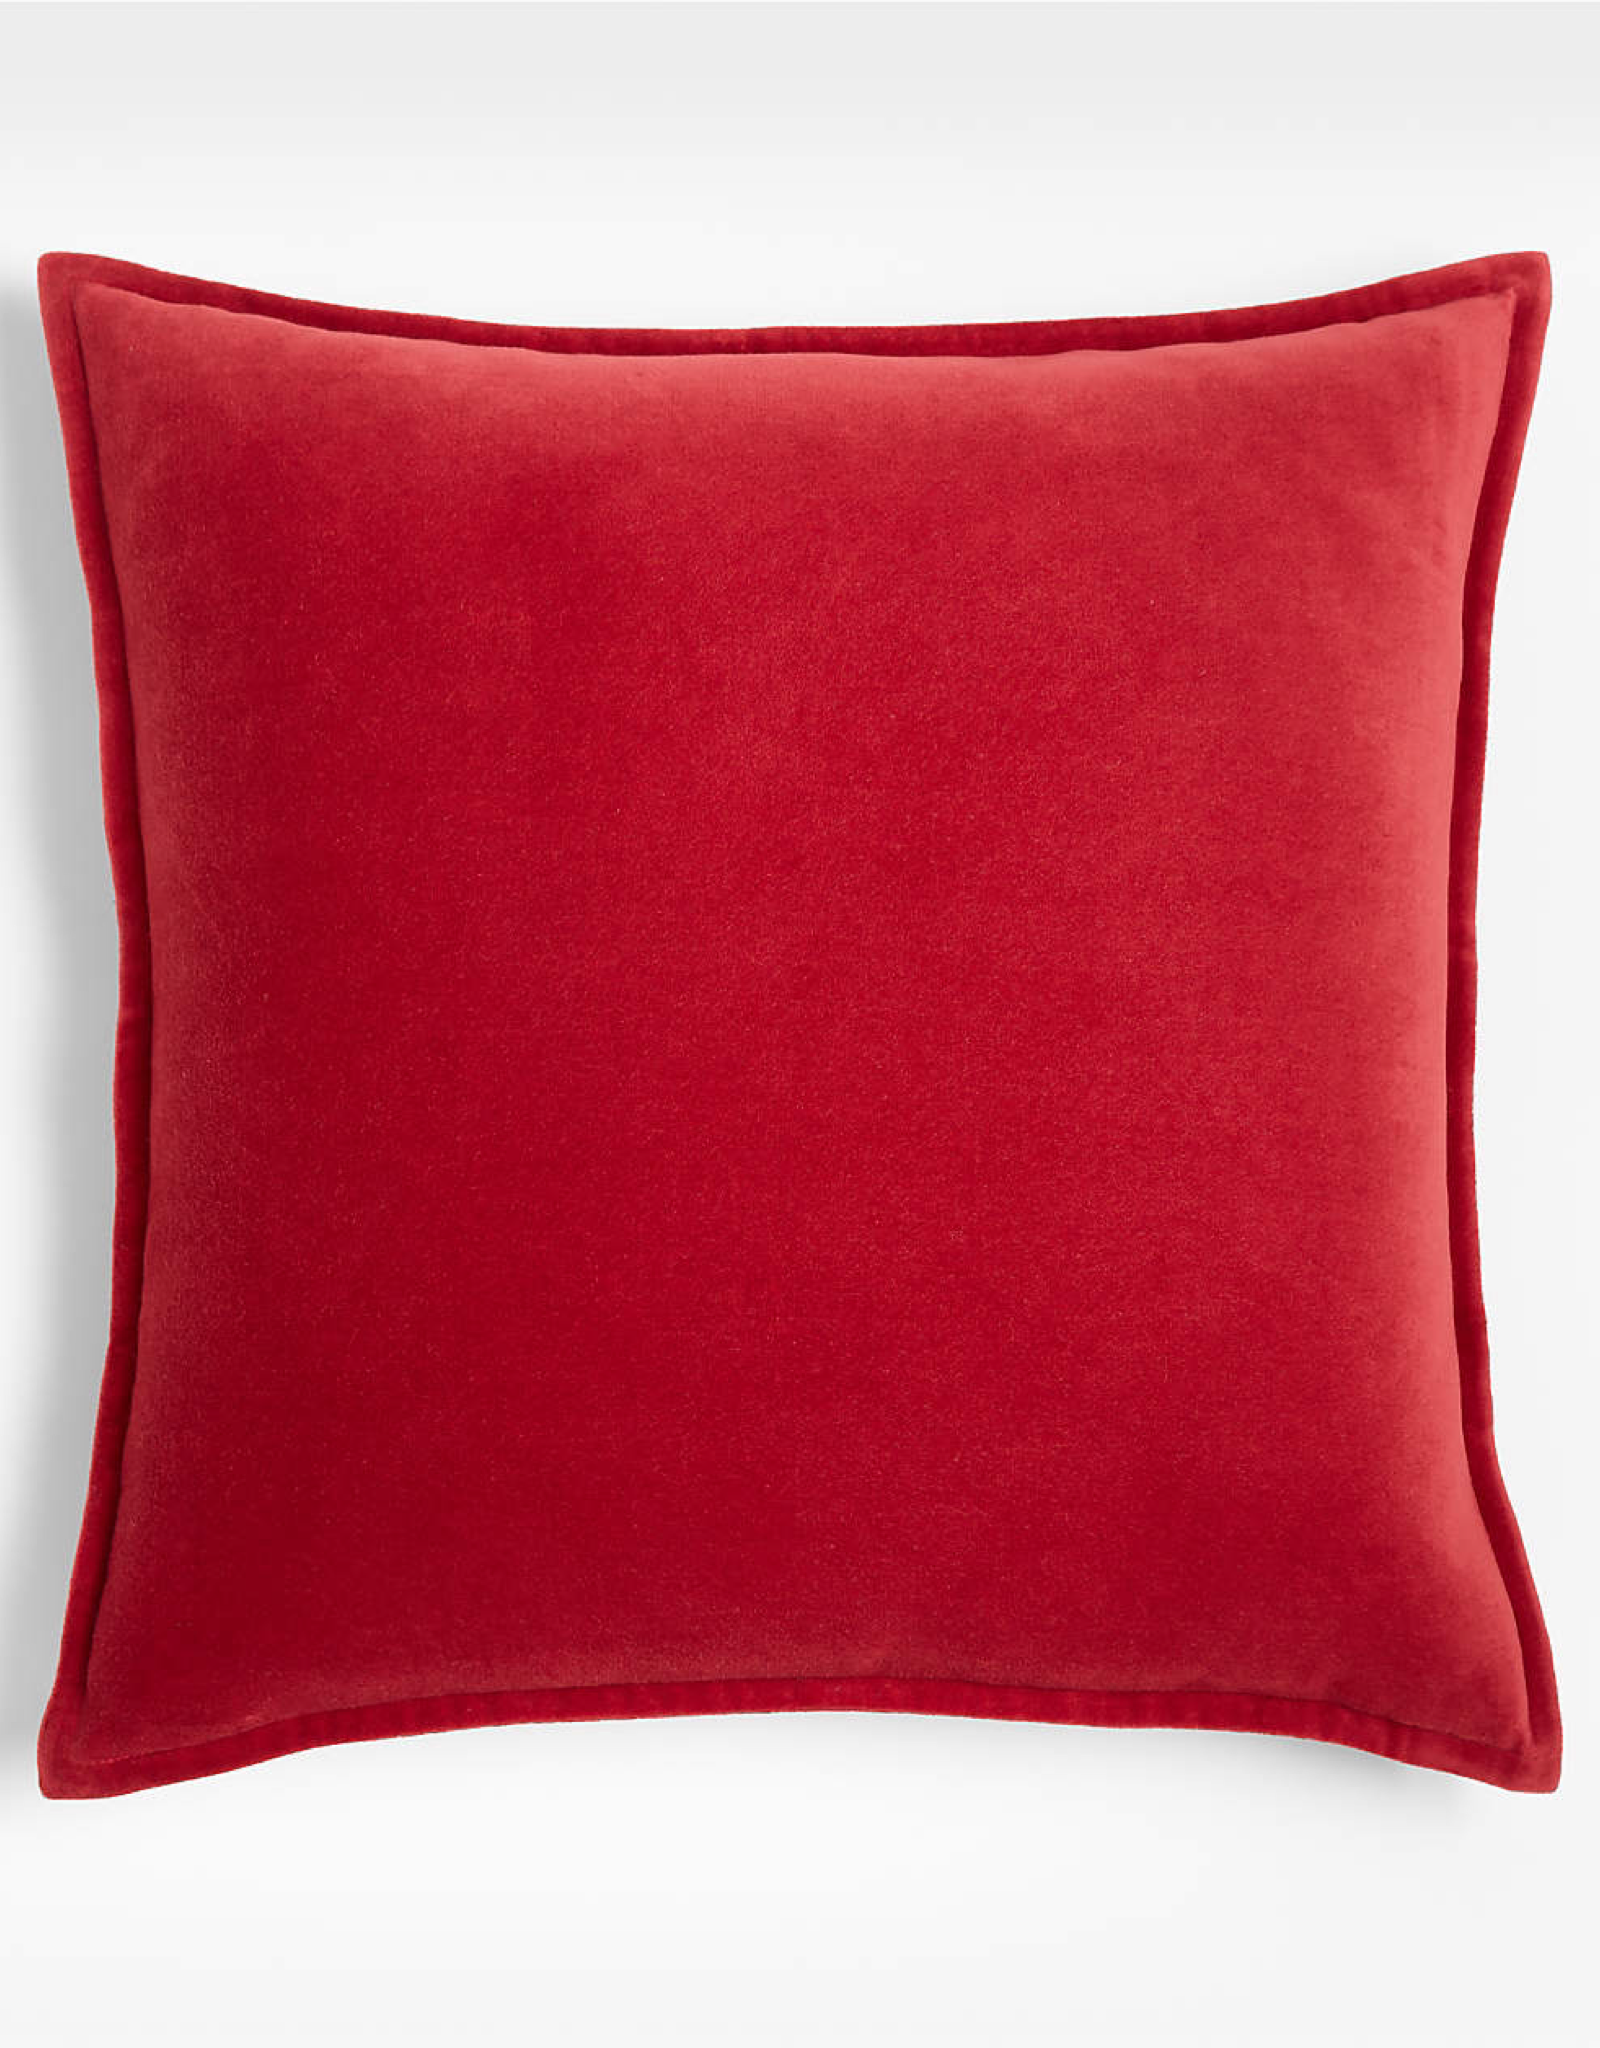 Daniadown Cushions Daniadown Dutch Velvet Red Euro 26 x 26